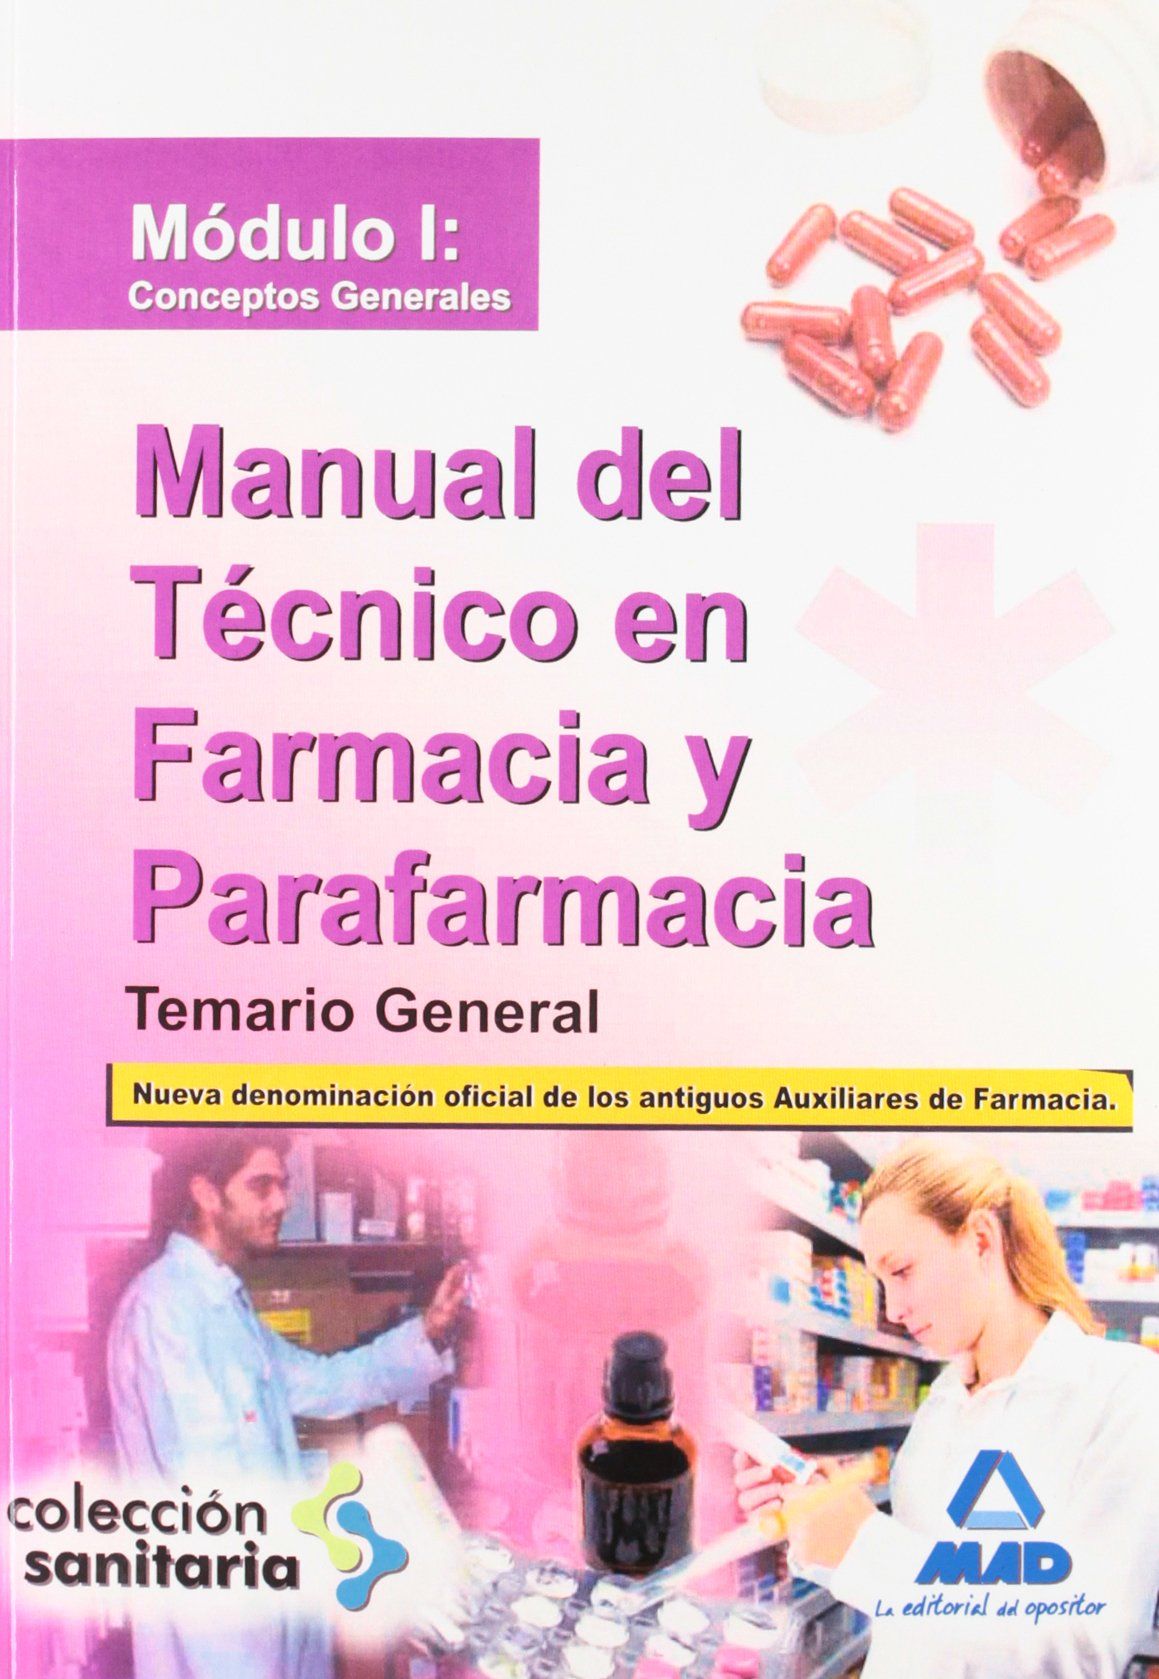 Manual del Técnico en Farmacia y Parafarmacia. Temario General. Módulo I: Conceptos Generales